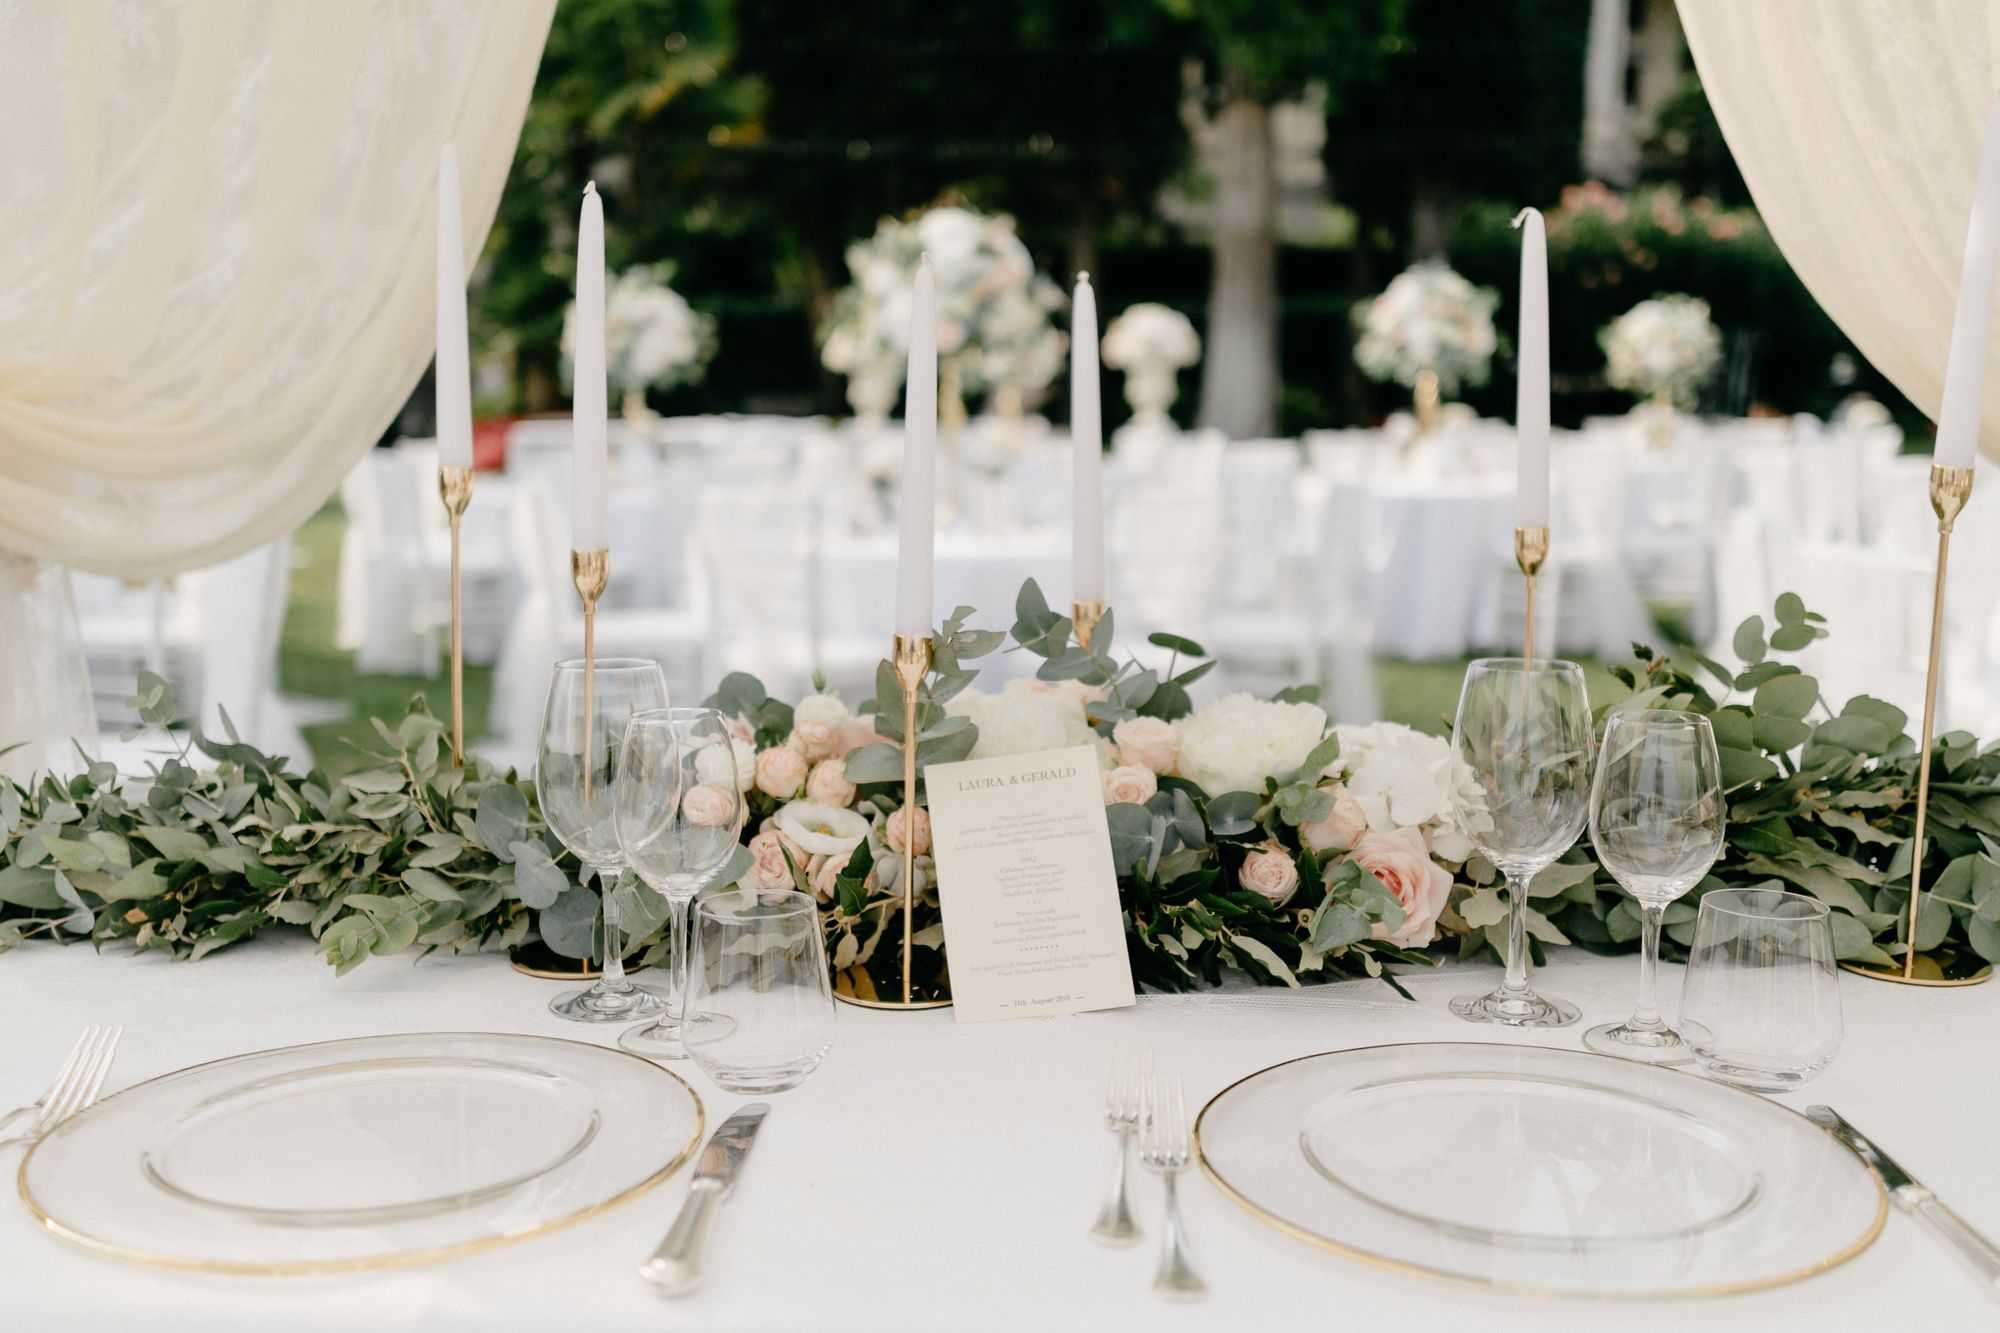 Eingedeckte Hochzeitstafel mit elegantem Geschirr